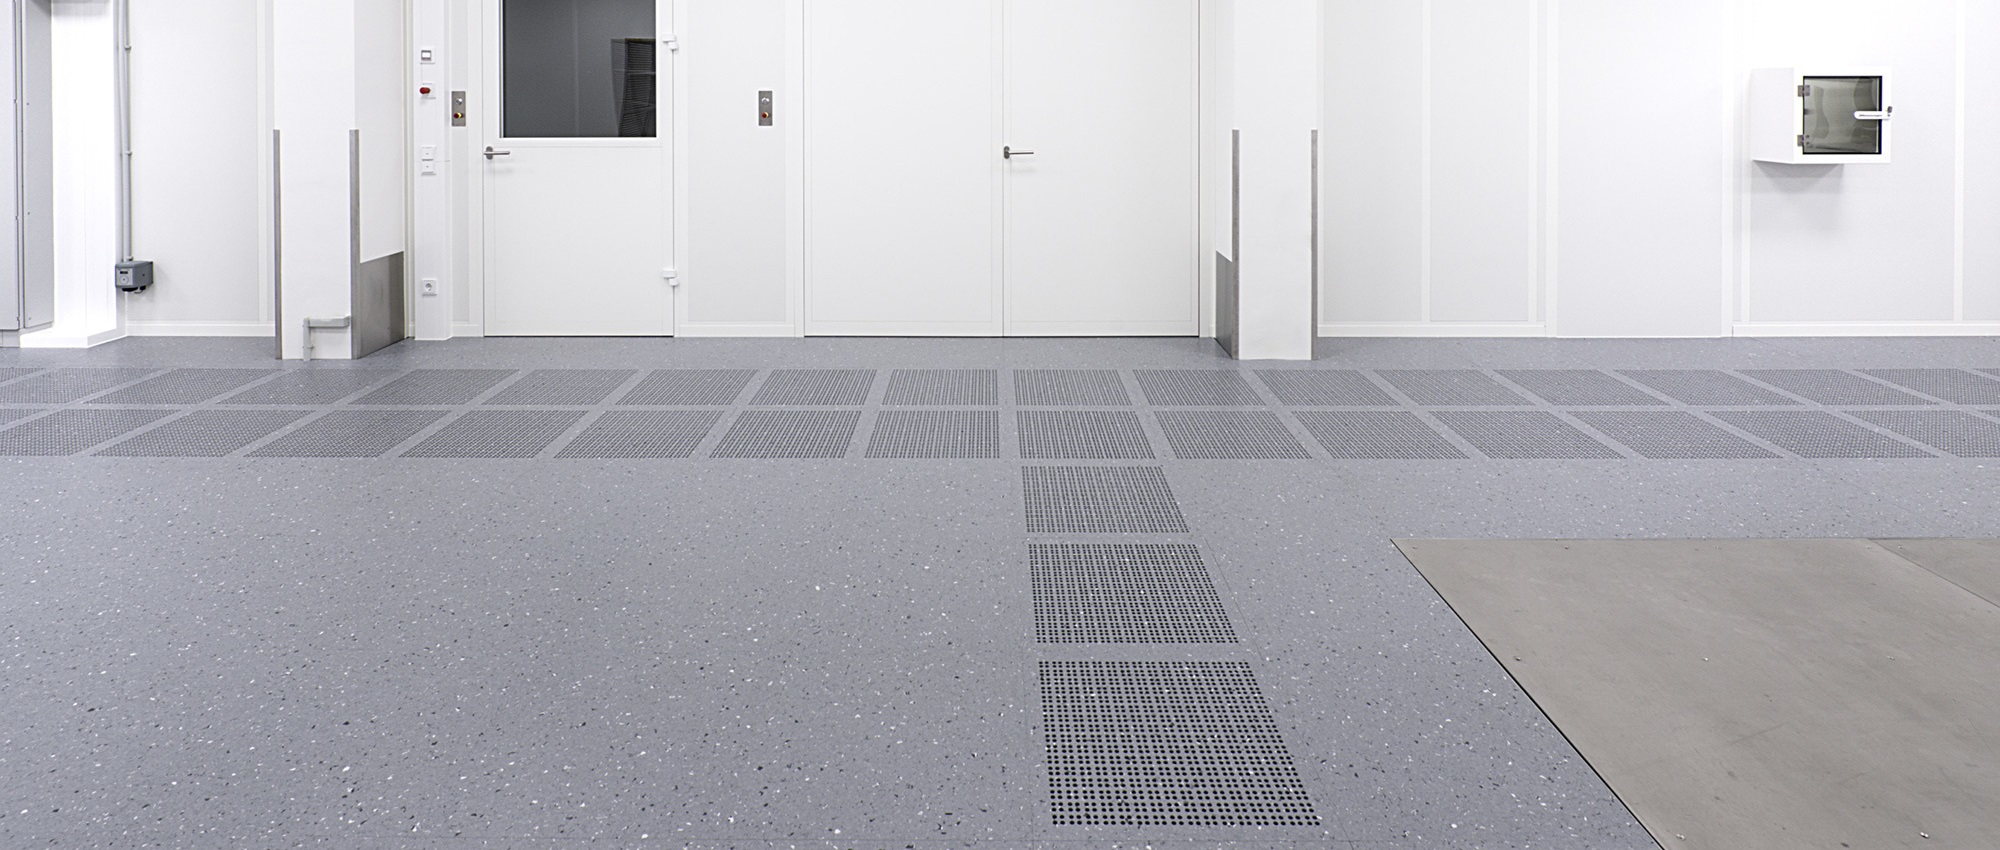 AUCO - Raised Access Floor, Floor Raising Systems, floor upgrade, raised floor.